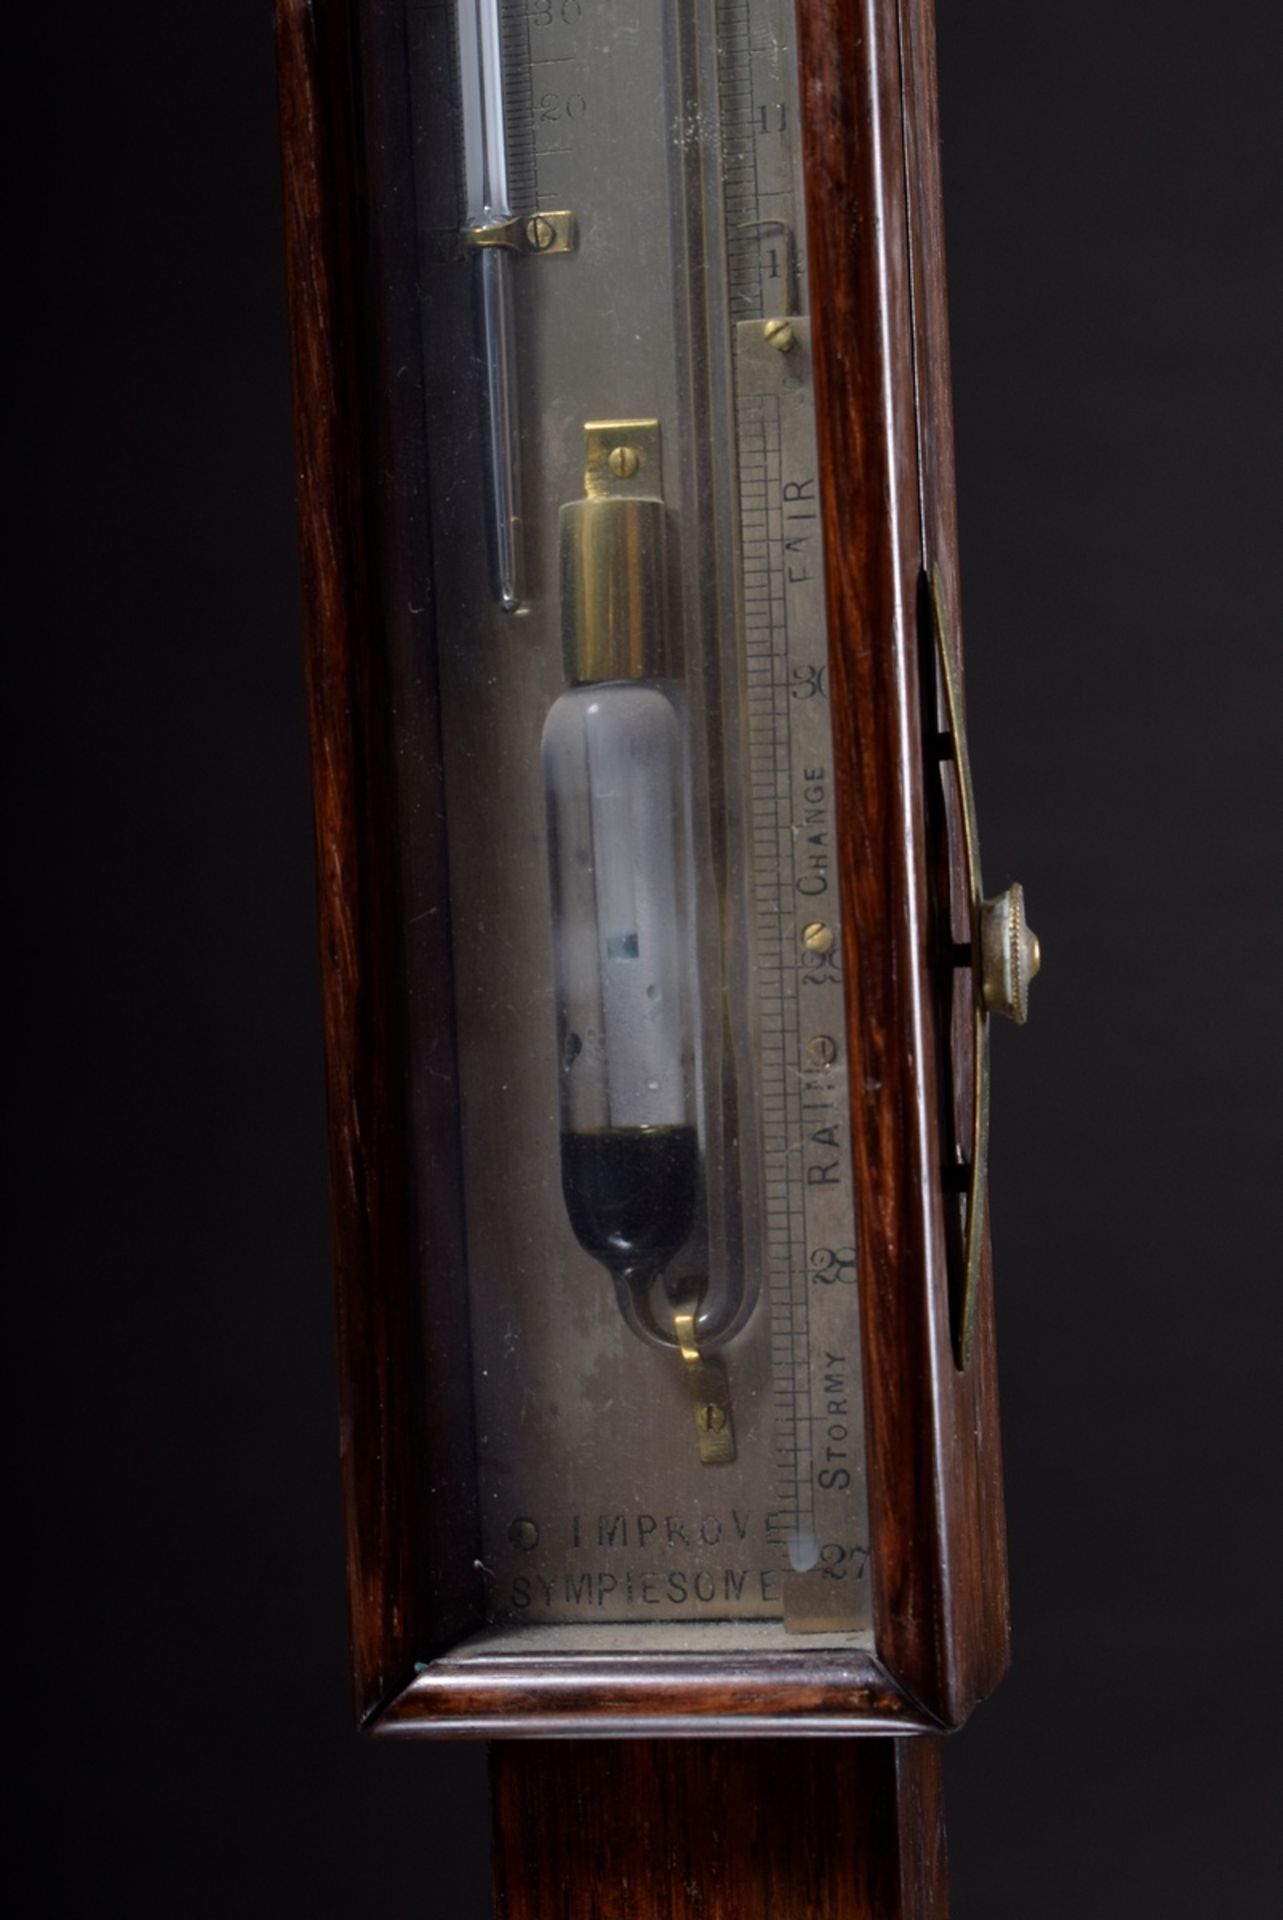 Kardanisch aufgehängtes Schiffs-Barometer mit Sympiesometer (erfunden 1818 Alexander Adir) in Mahag - Bild 4 aus 10